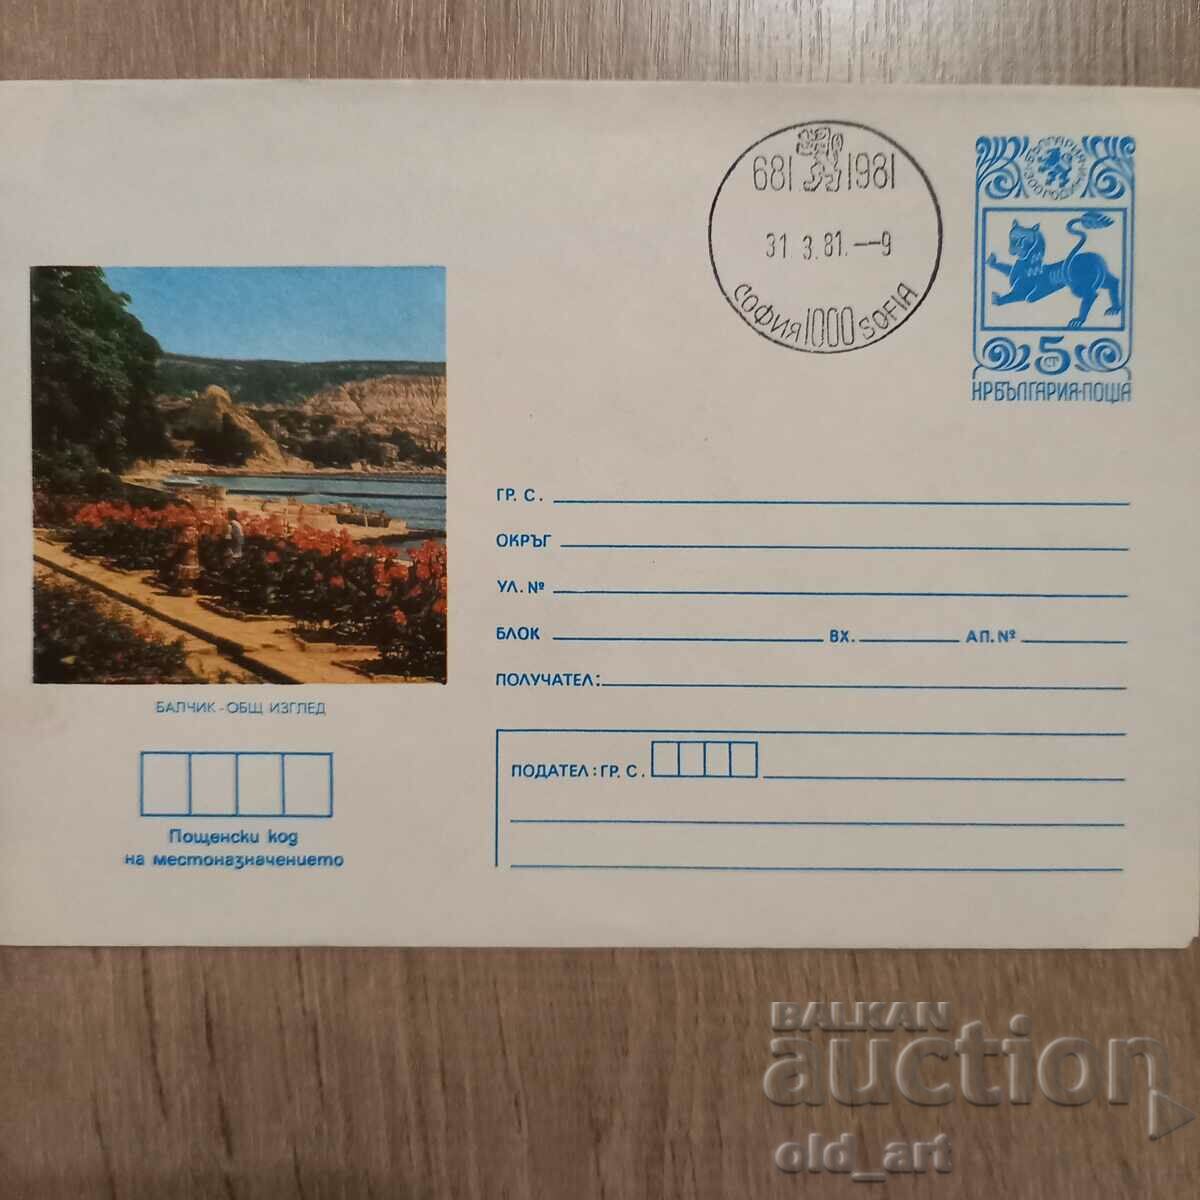 Postal envelope - Balchik, General view